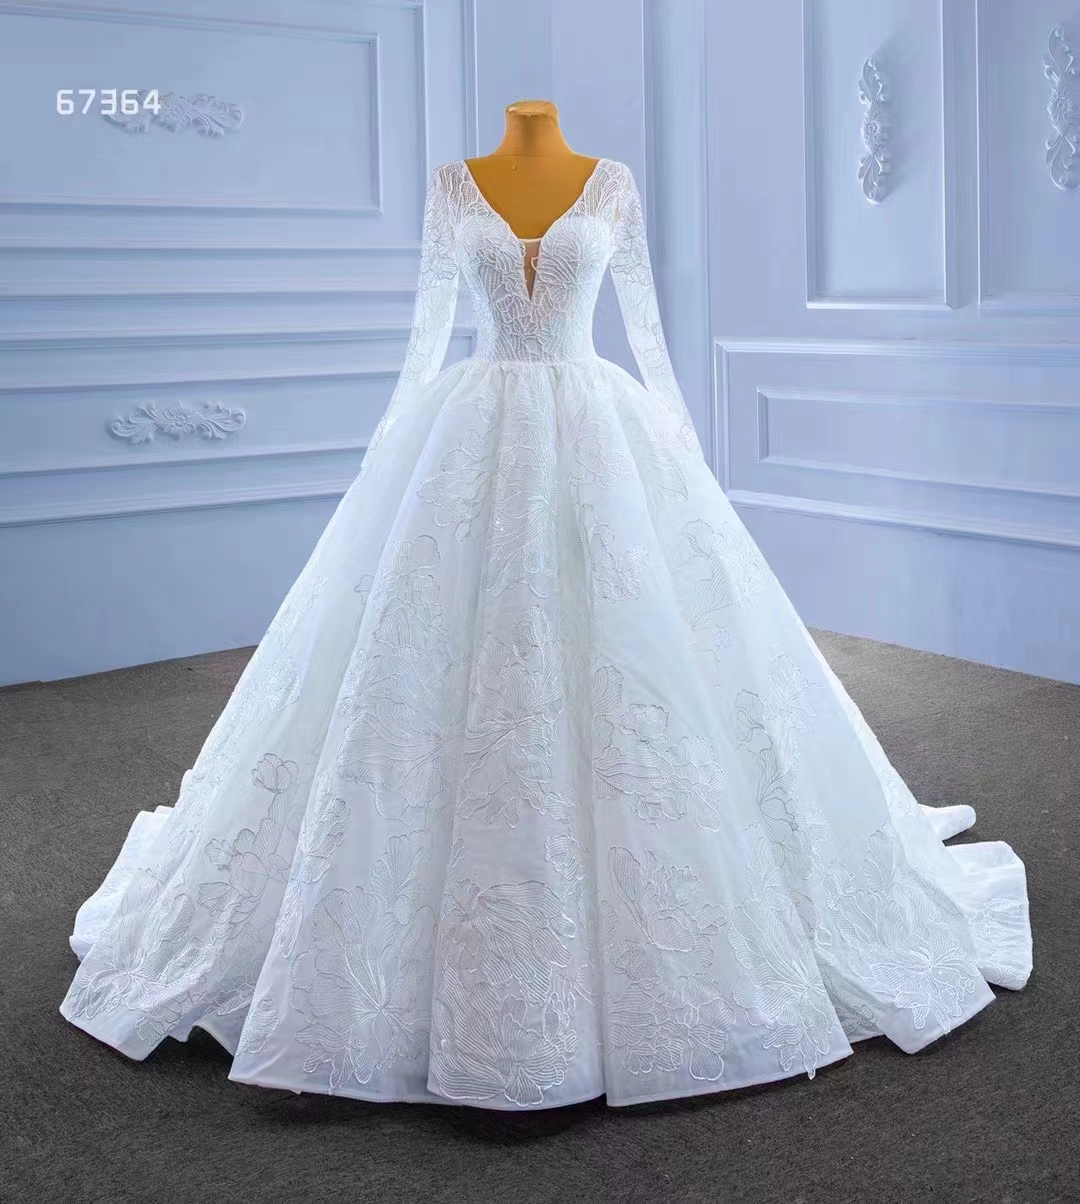 Langarm weiße Tüll Truthahn Brautkugel Elegantes Hochzeitskleid SM67364